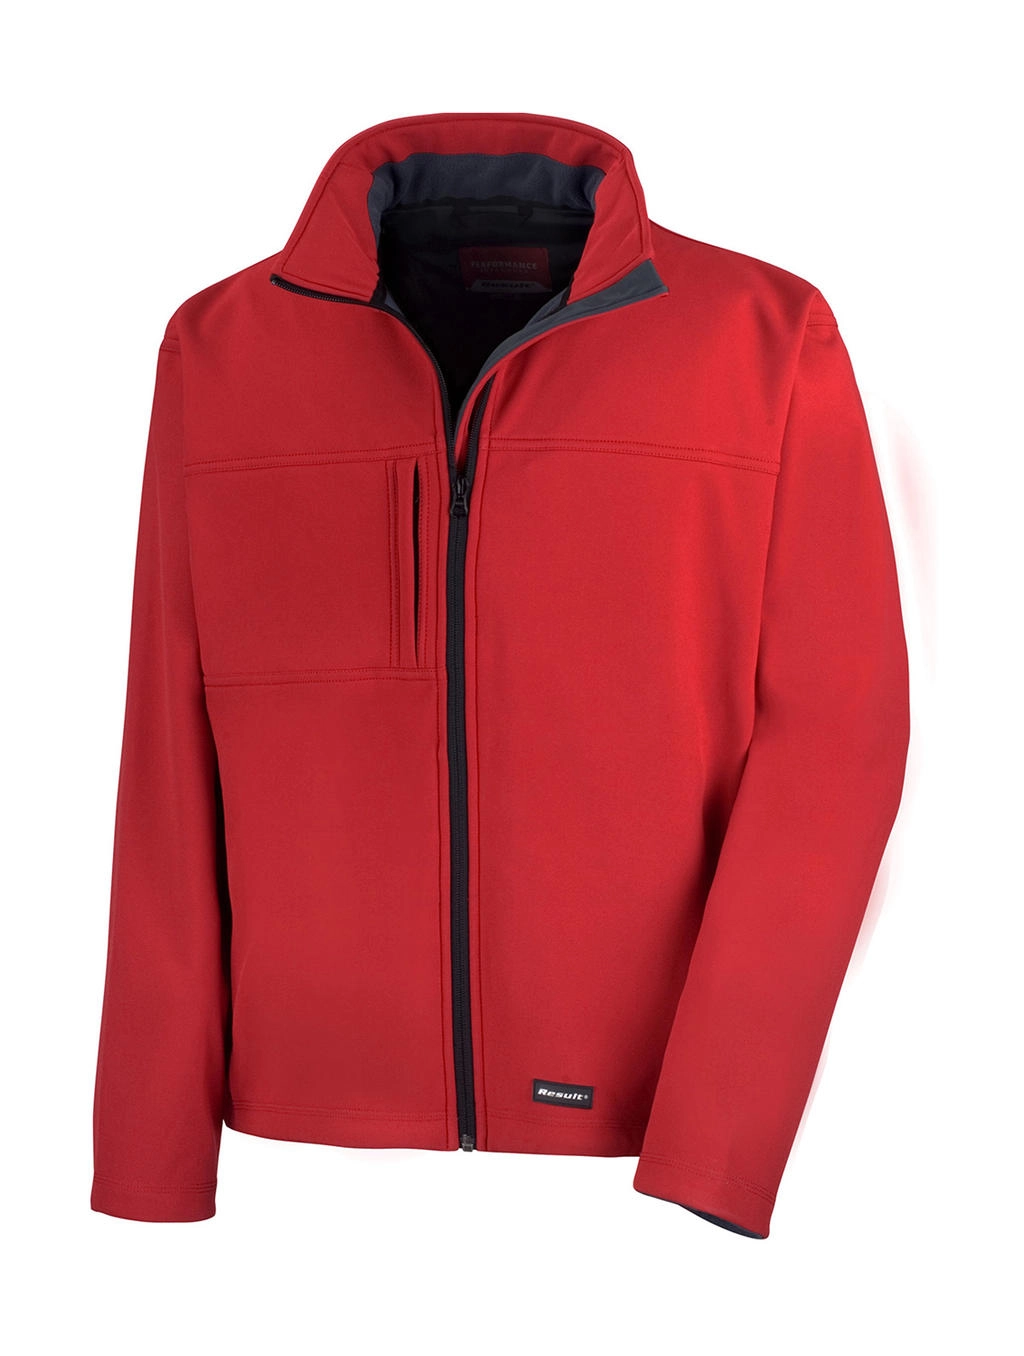 Men`s Classic Softshell Jacket zum Besticken und Bedrucken in der Farbe Red mit Ihren Logo, Schriftzug oder Motiv.